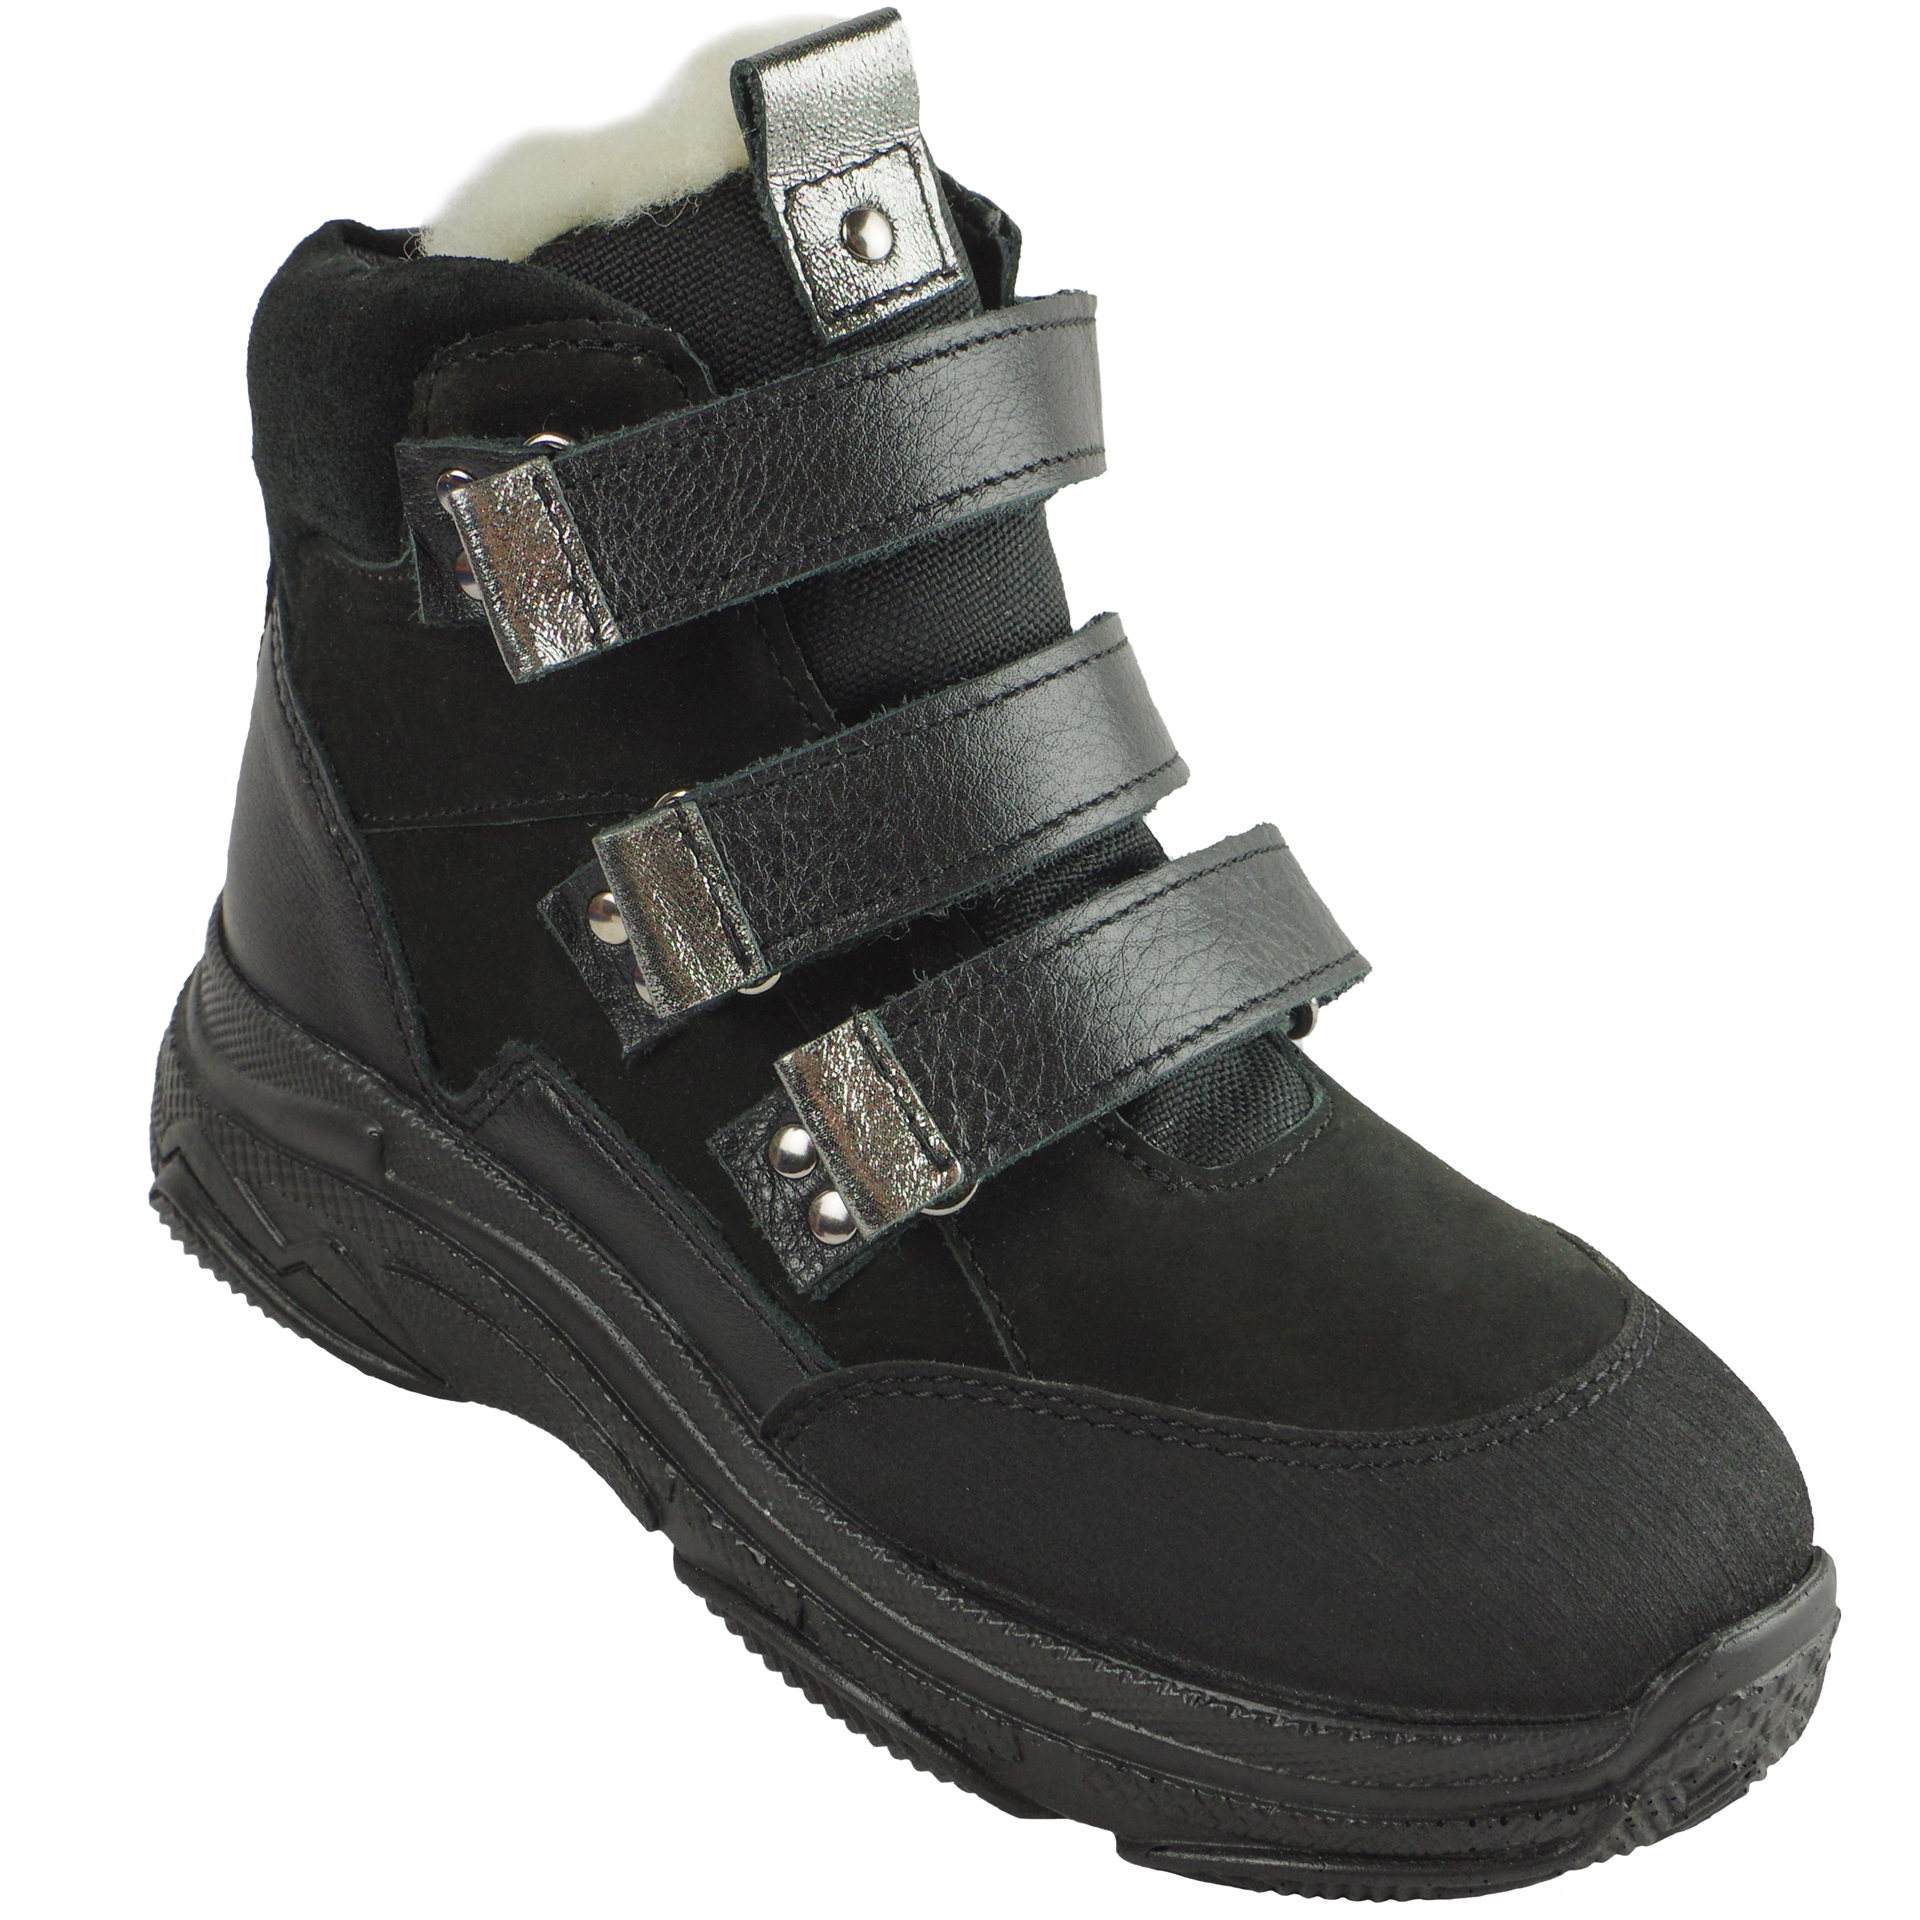 Зимові черевики дитячі (2081) для дівчинки, матеріал Натуральна шкіра, Чорний колір, 31-38 розміри – Sole Kids. Фото 1